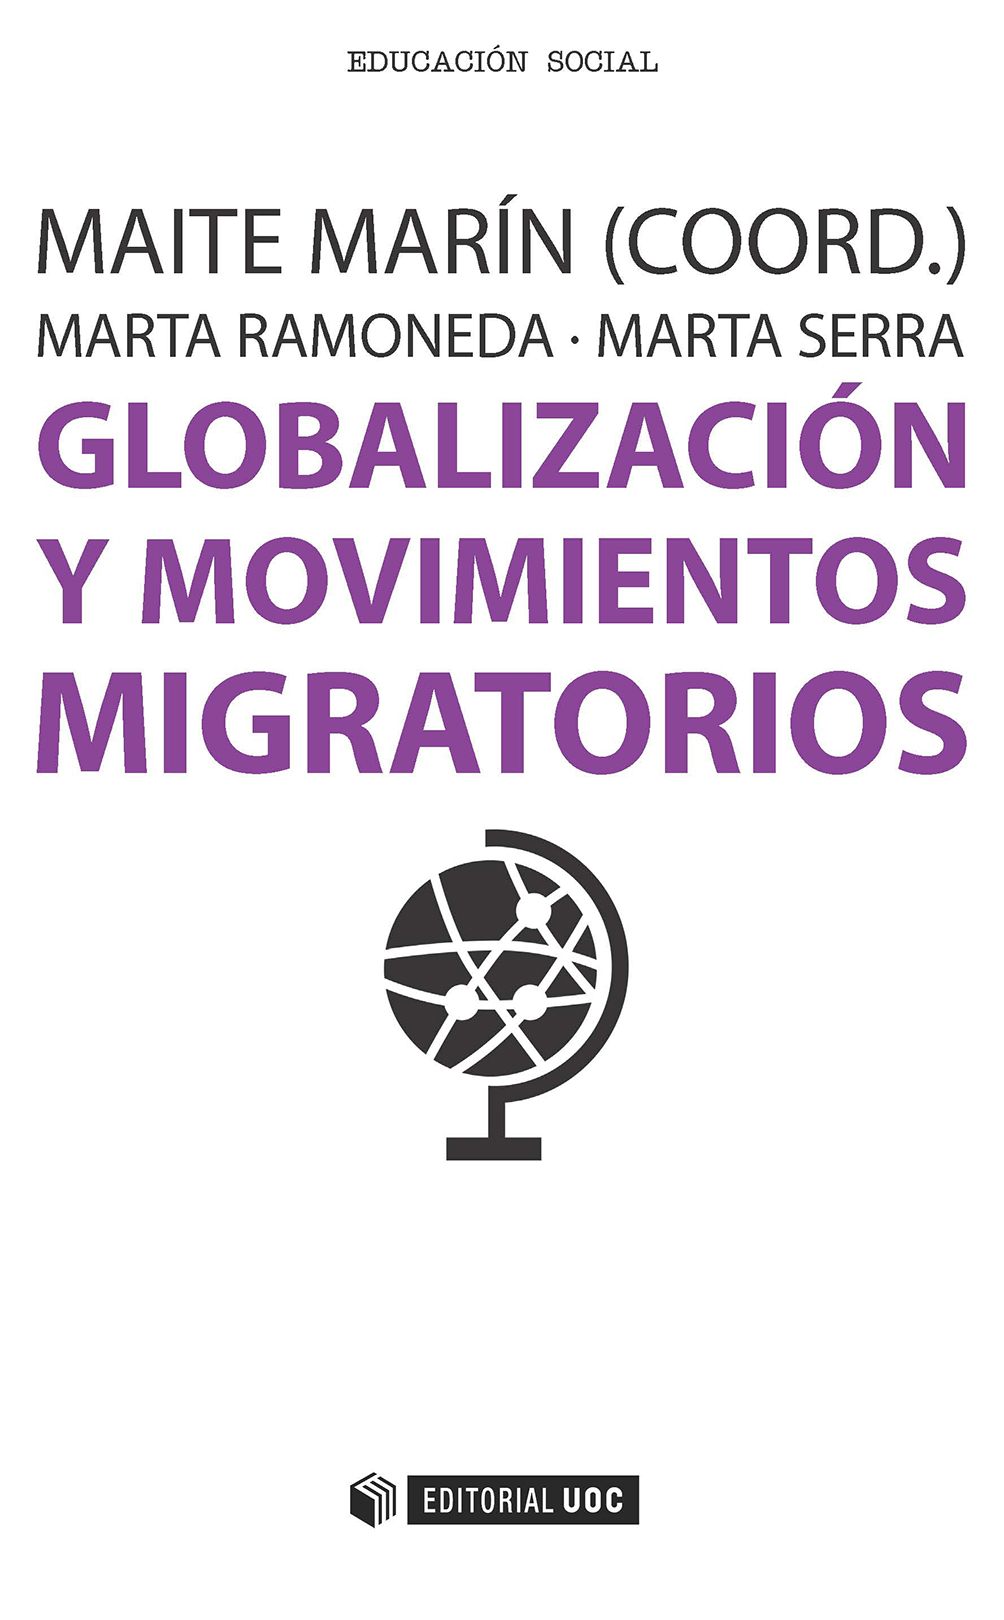 GlobalizaciÃ³n y movimientos migratorios